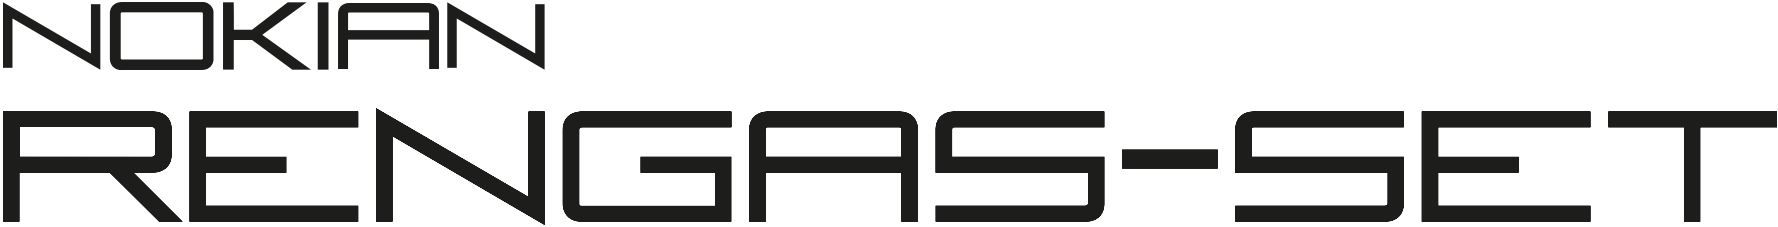 nokian rengas-set logo.JPG